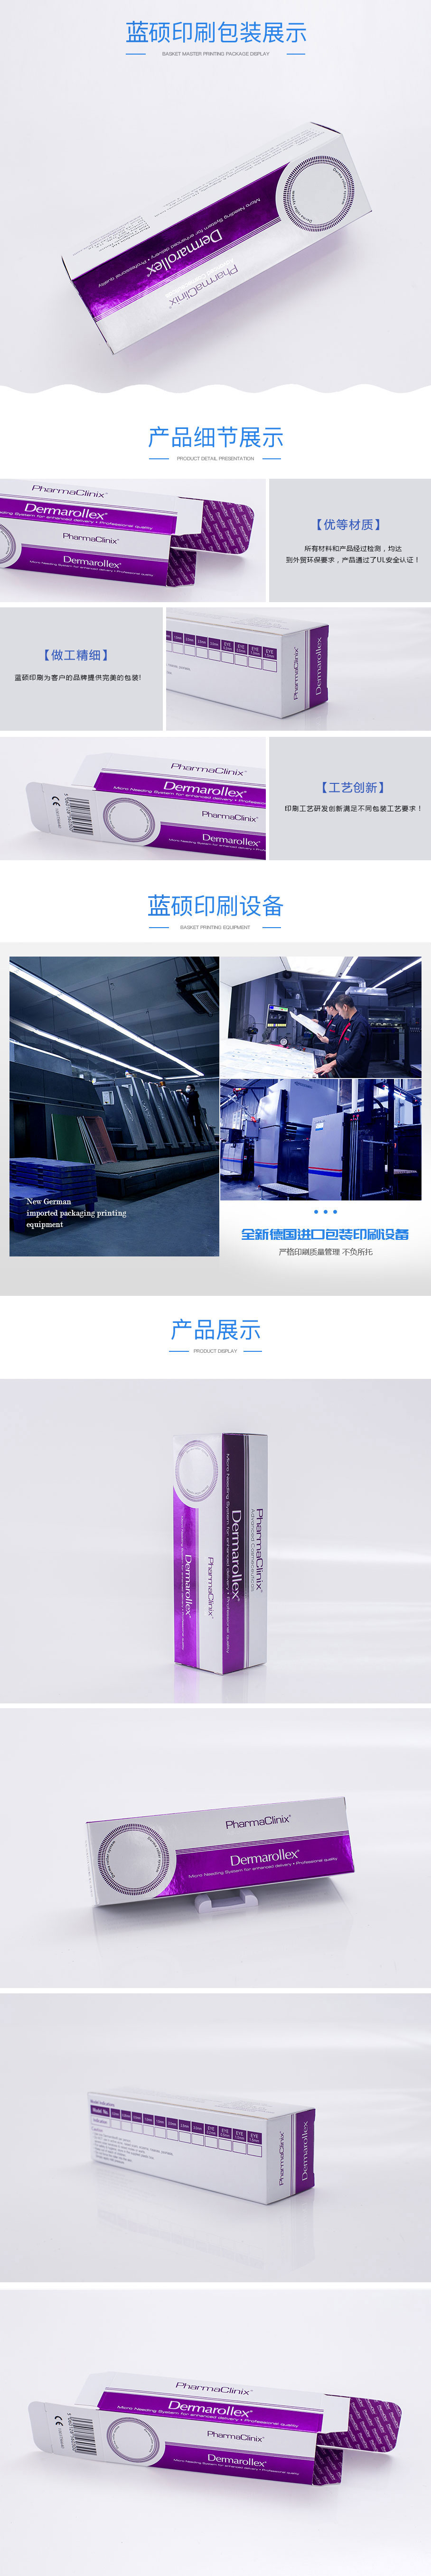  PC Dermarollex-美妝(Zhuāng)紫色銀卡盒